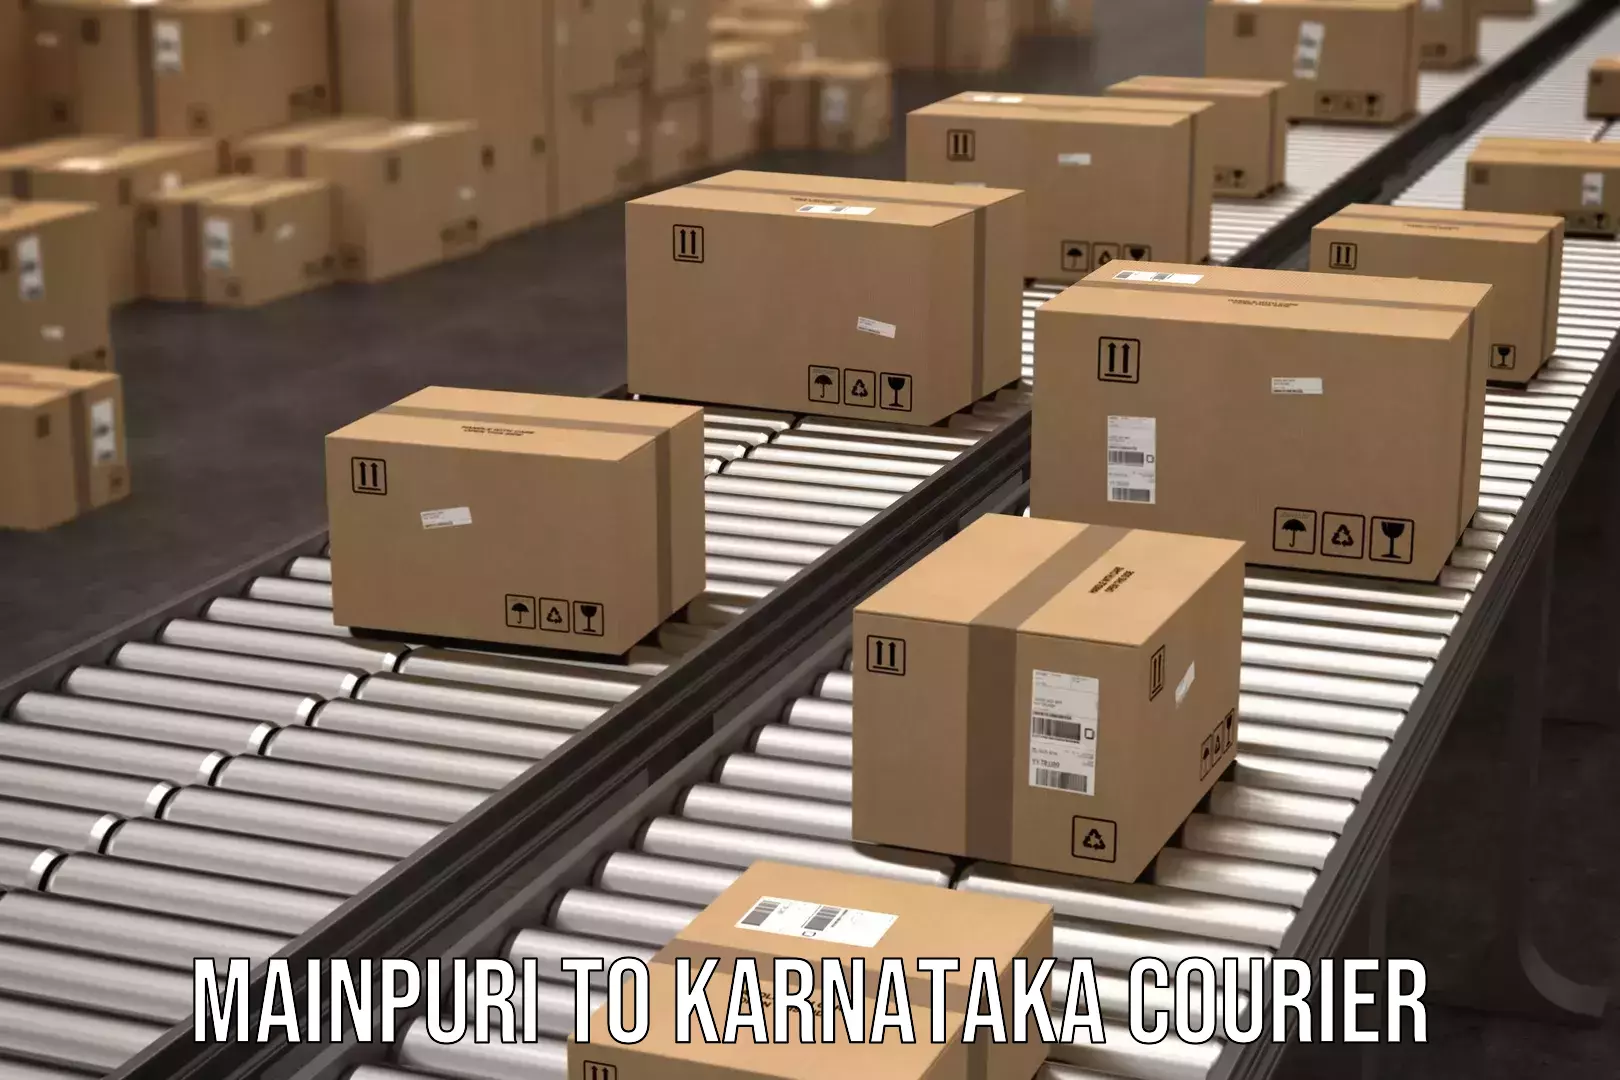 Enhanced tracking features Mainpuri to Karnataka